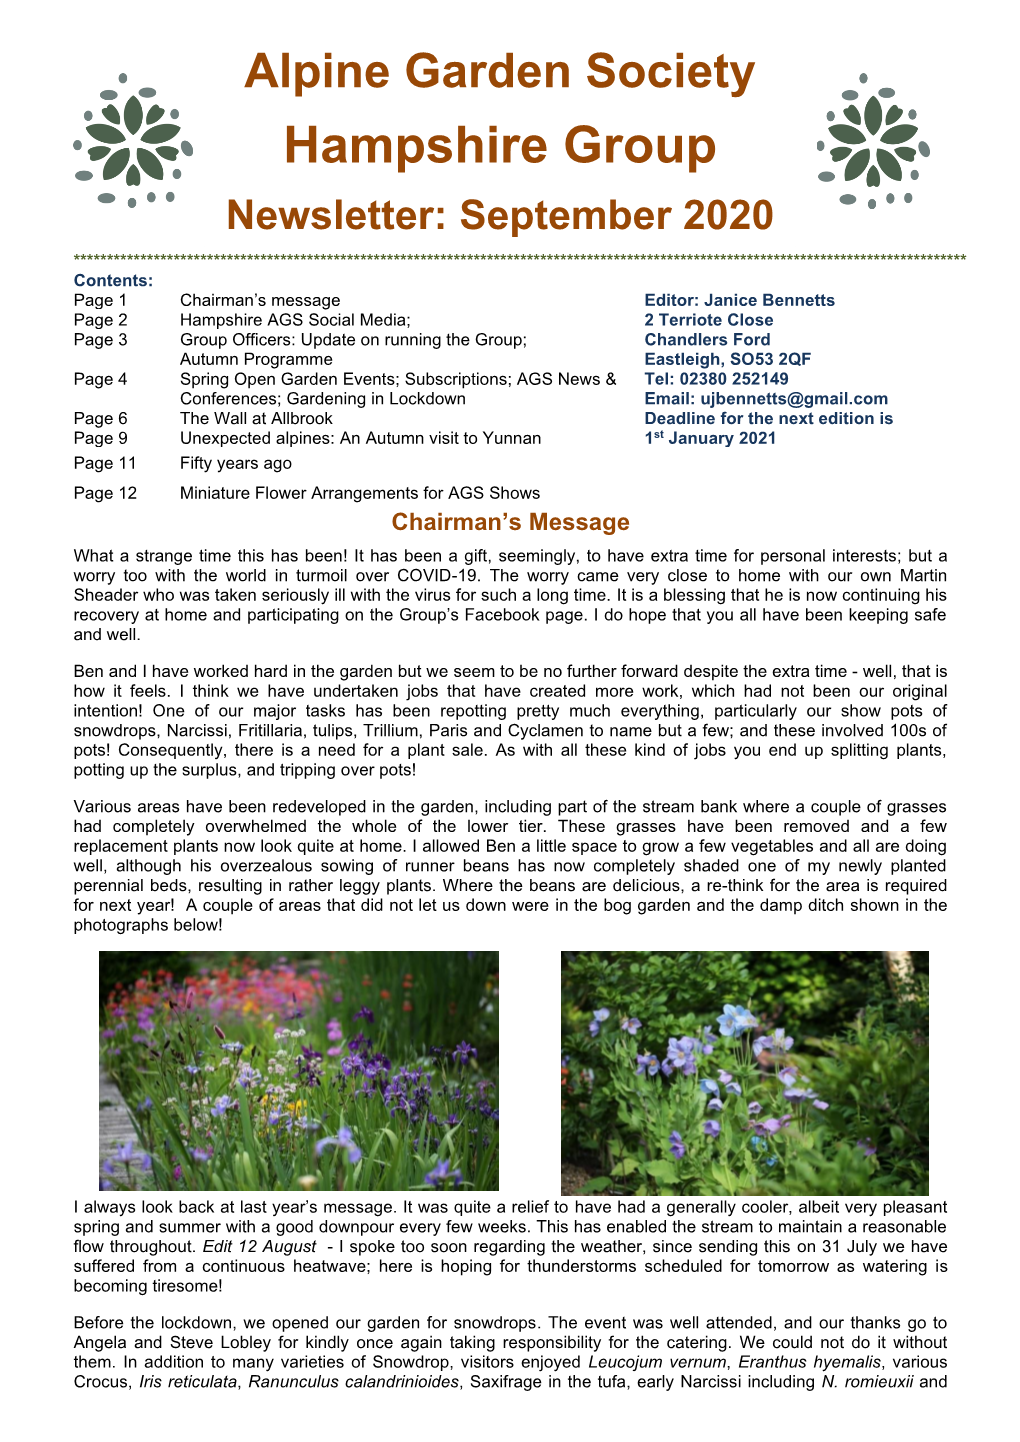 Hampshire AGS September 2020 Newsletter